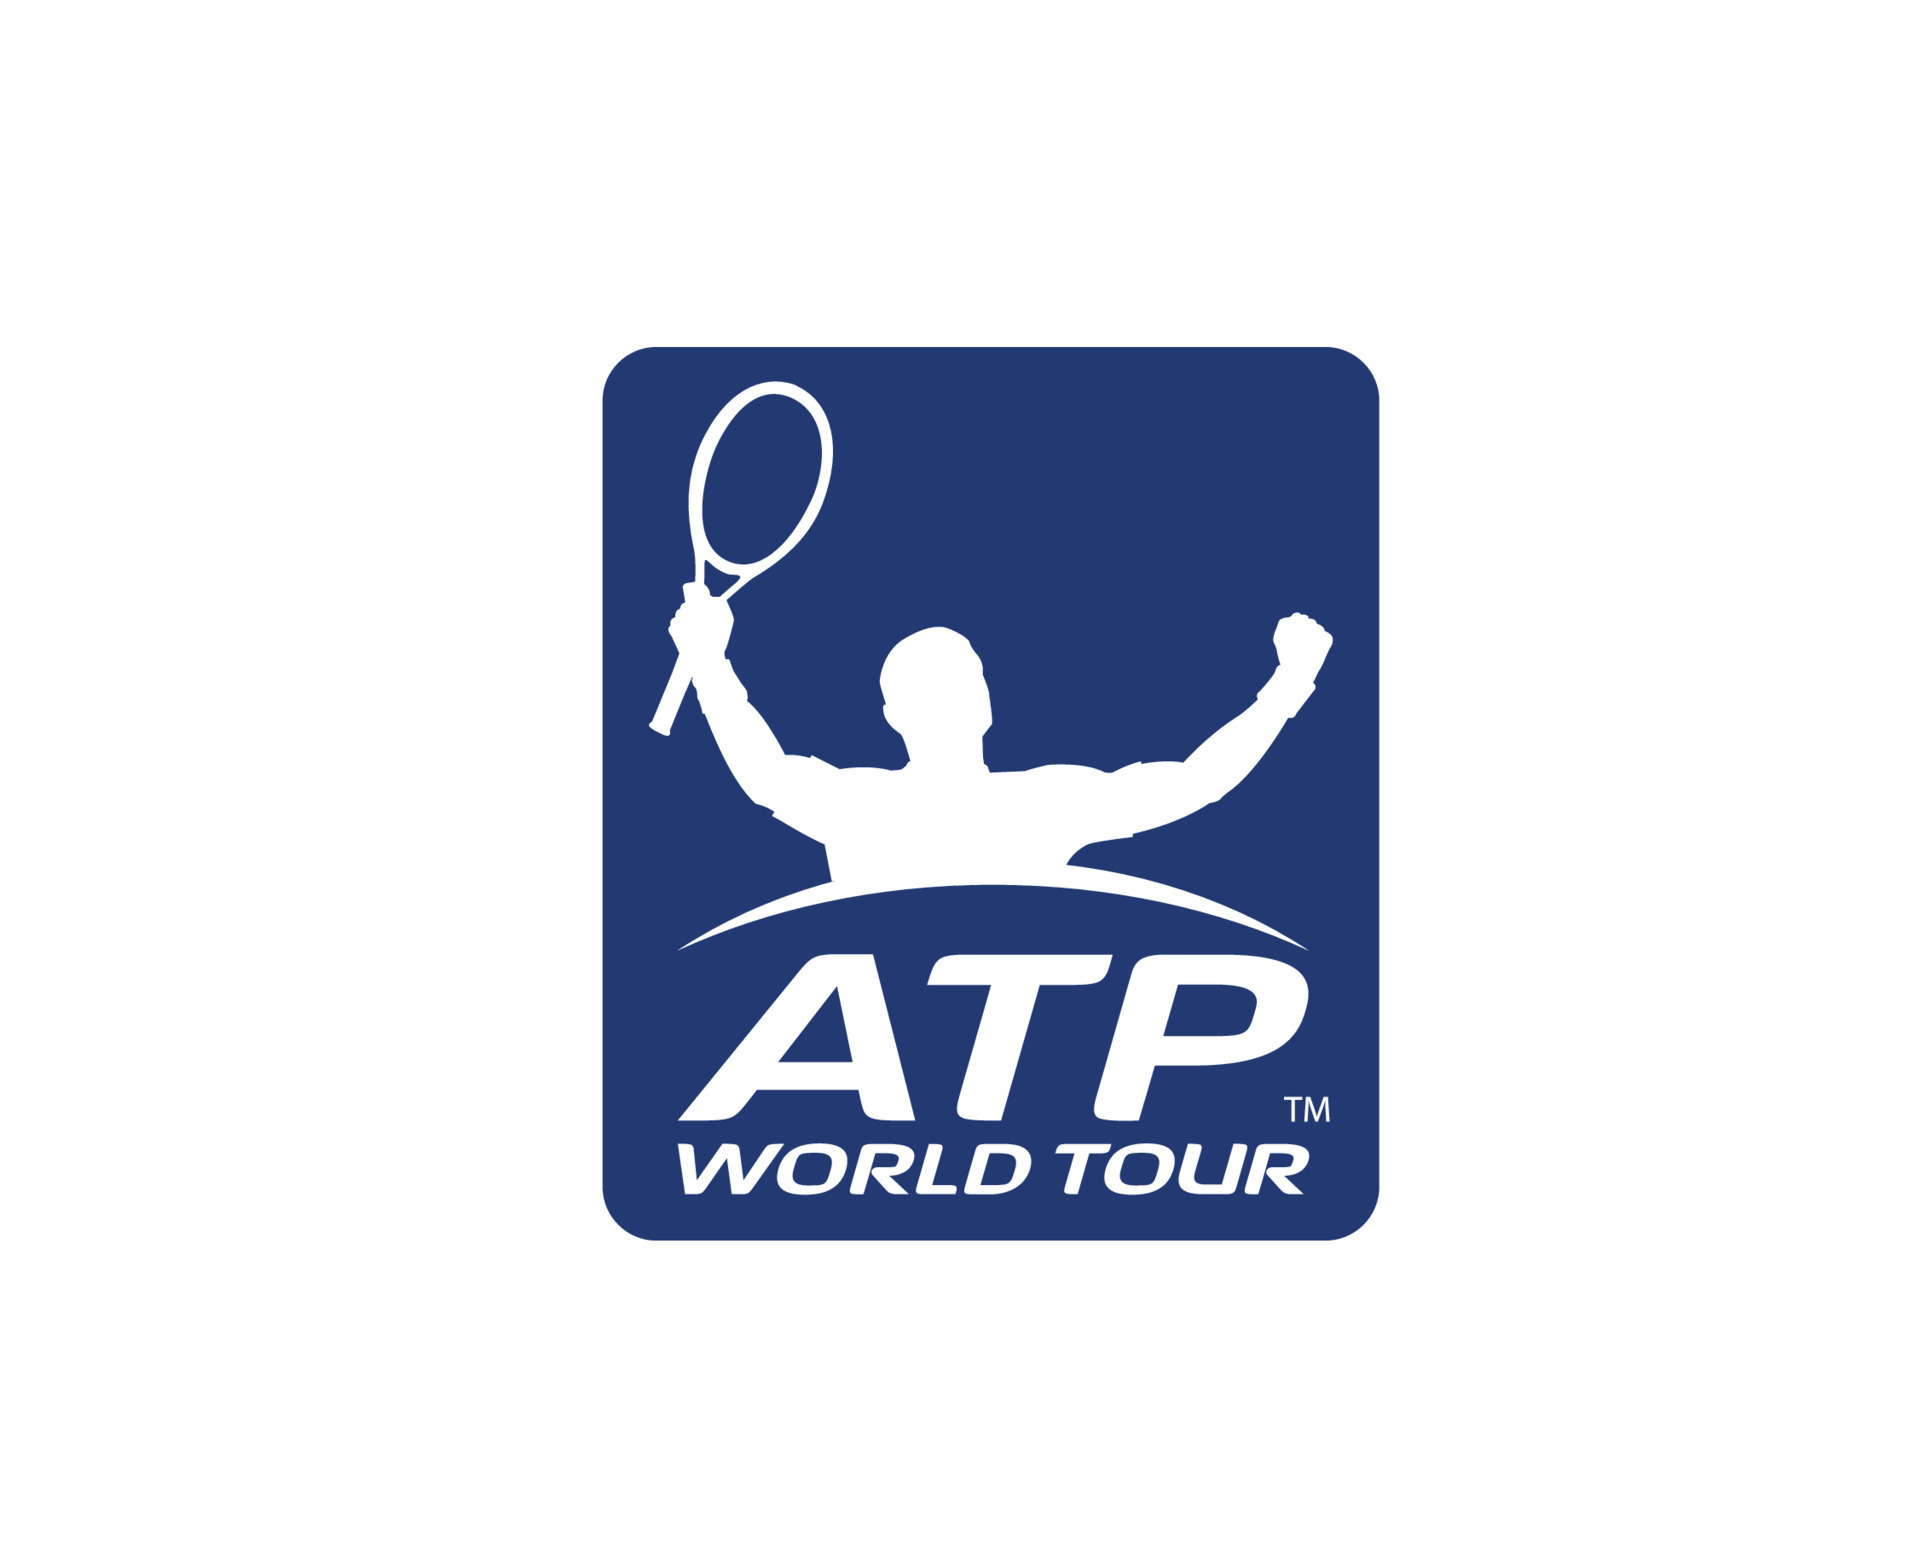 ATP World Tour Series Logos  Tours, Sports logo, Sports news